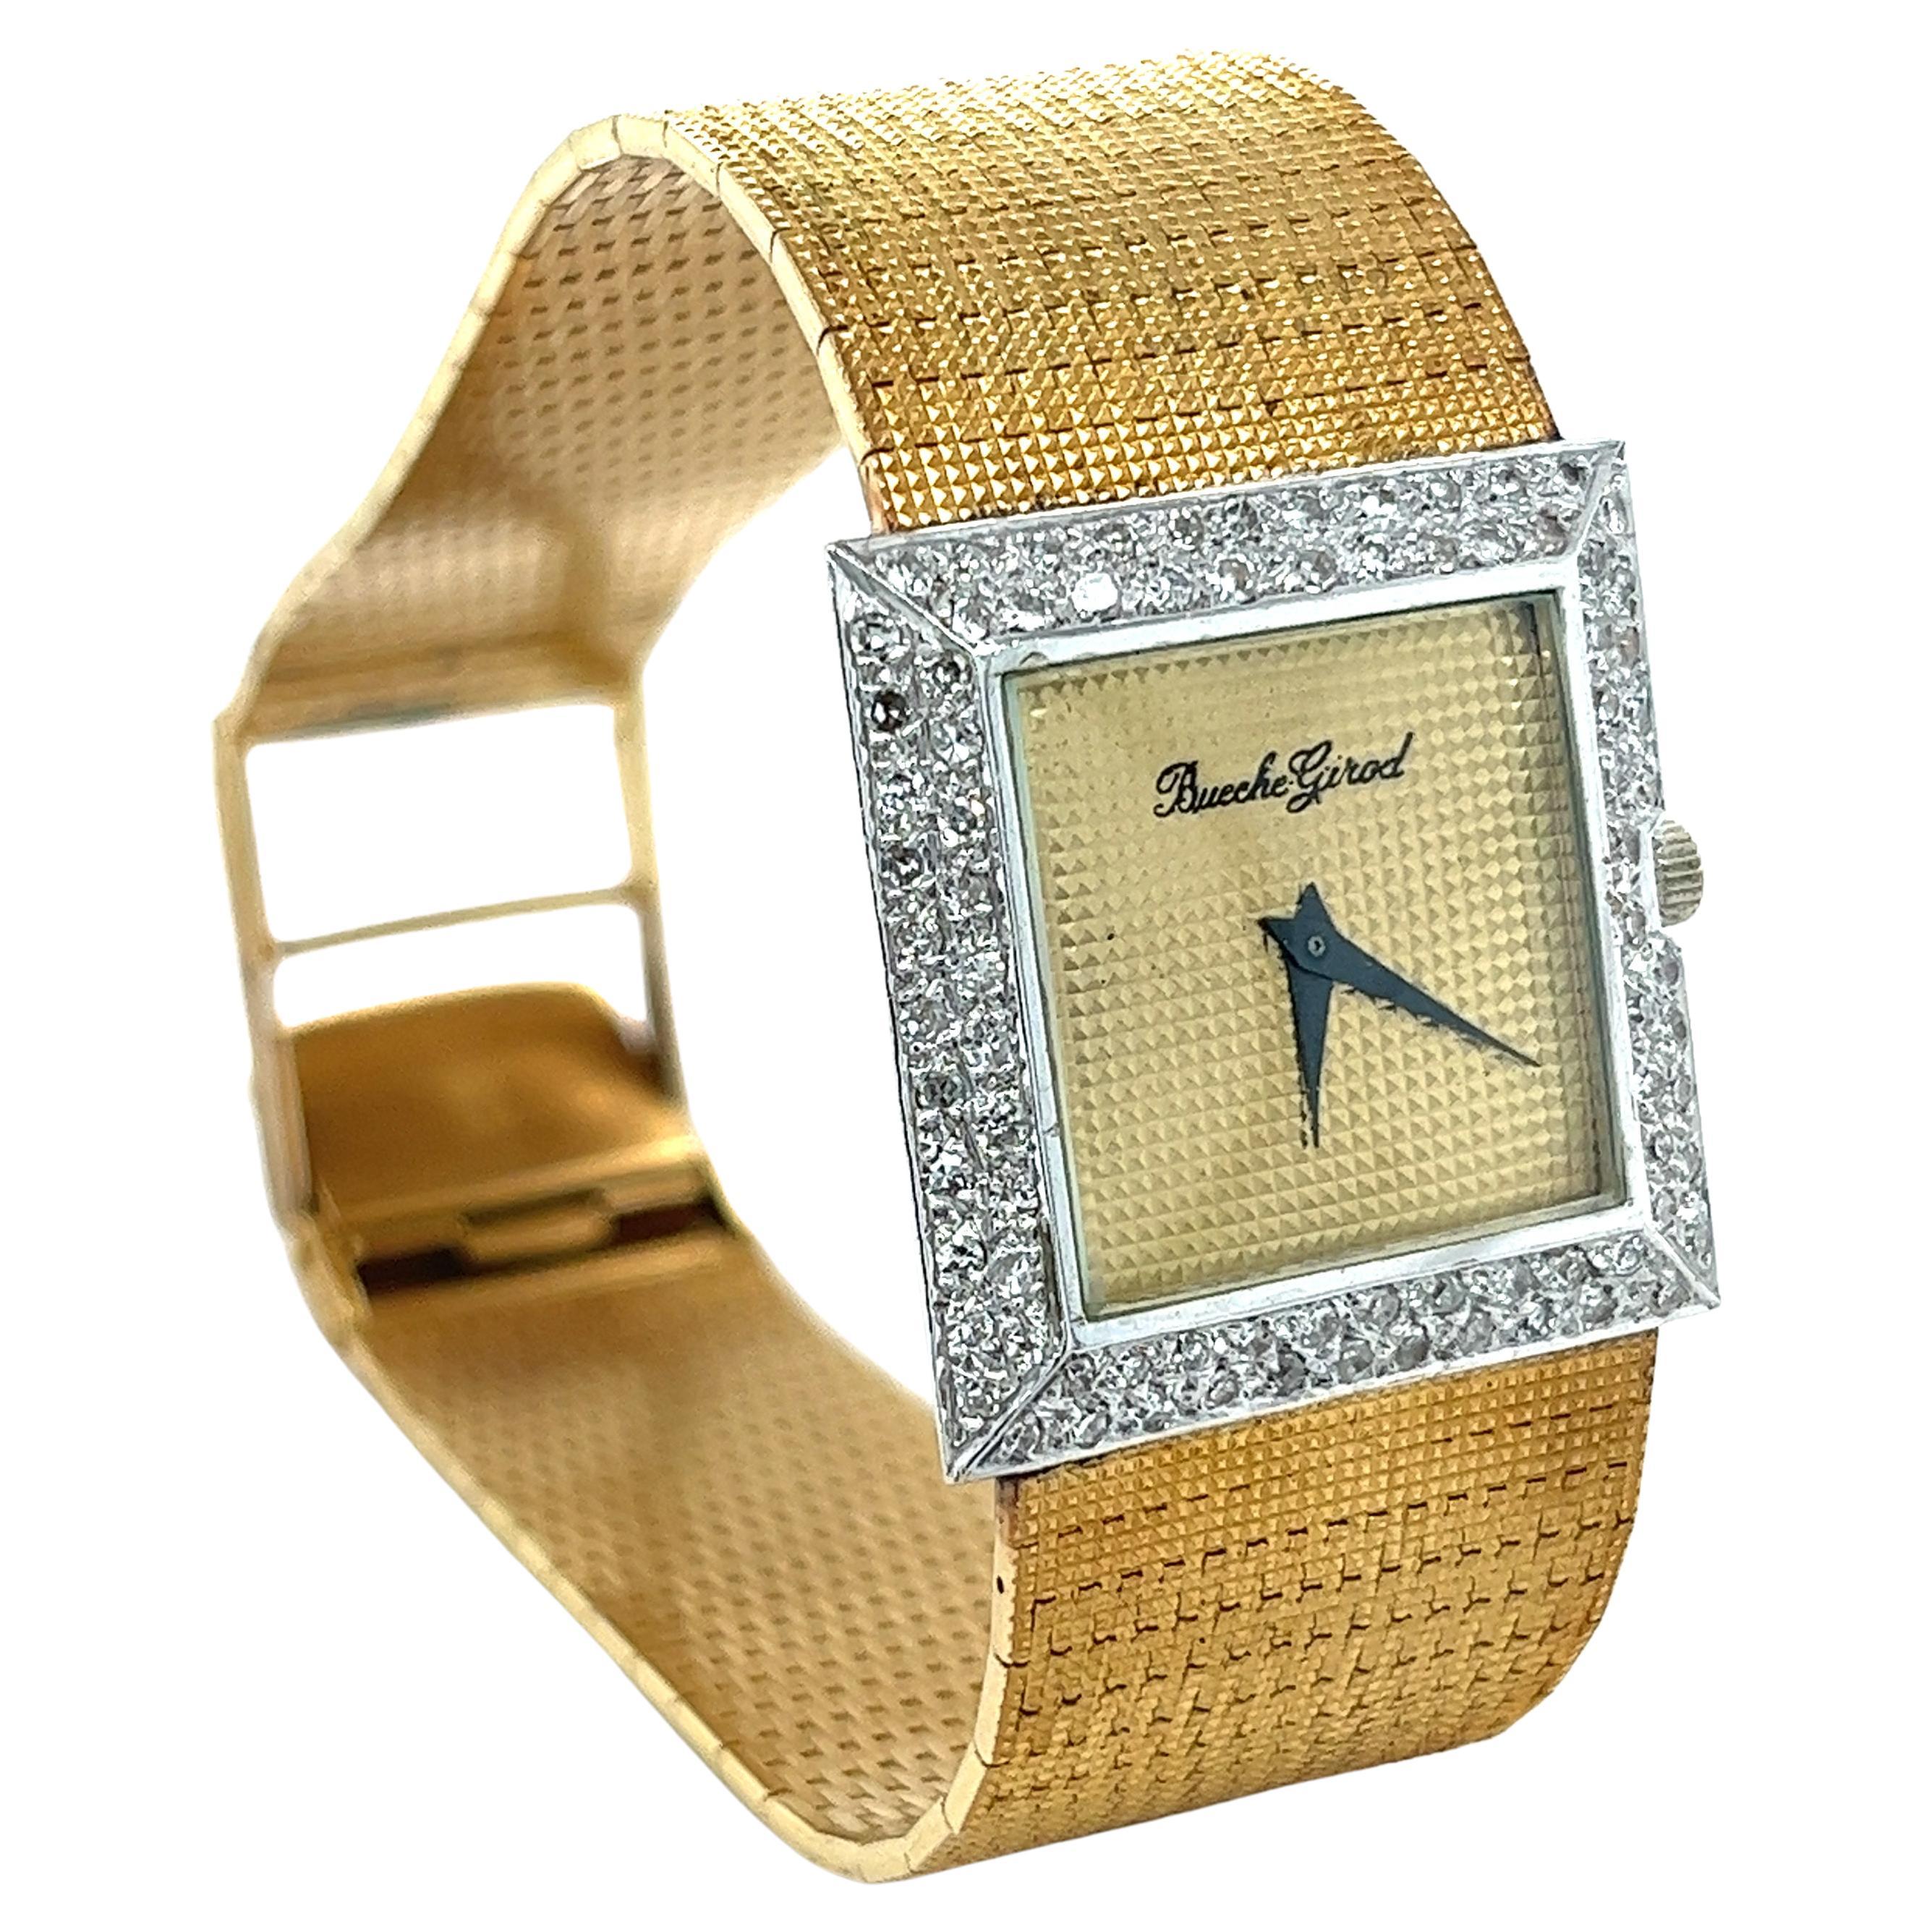 Montre carrée Bueche Girod en or 18 carats avec lunette en diamants et bracelet à dauphins texturés